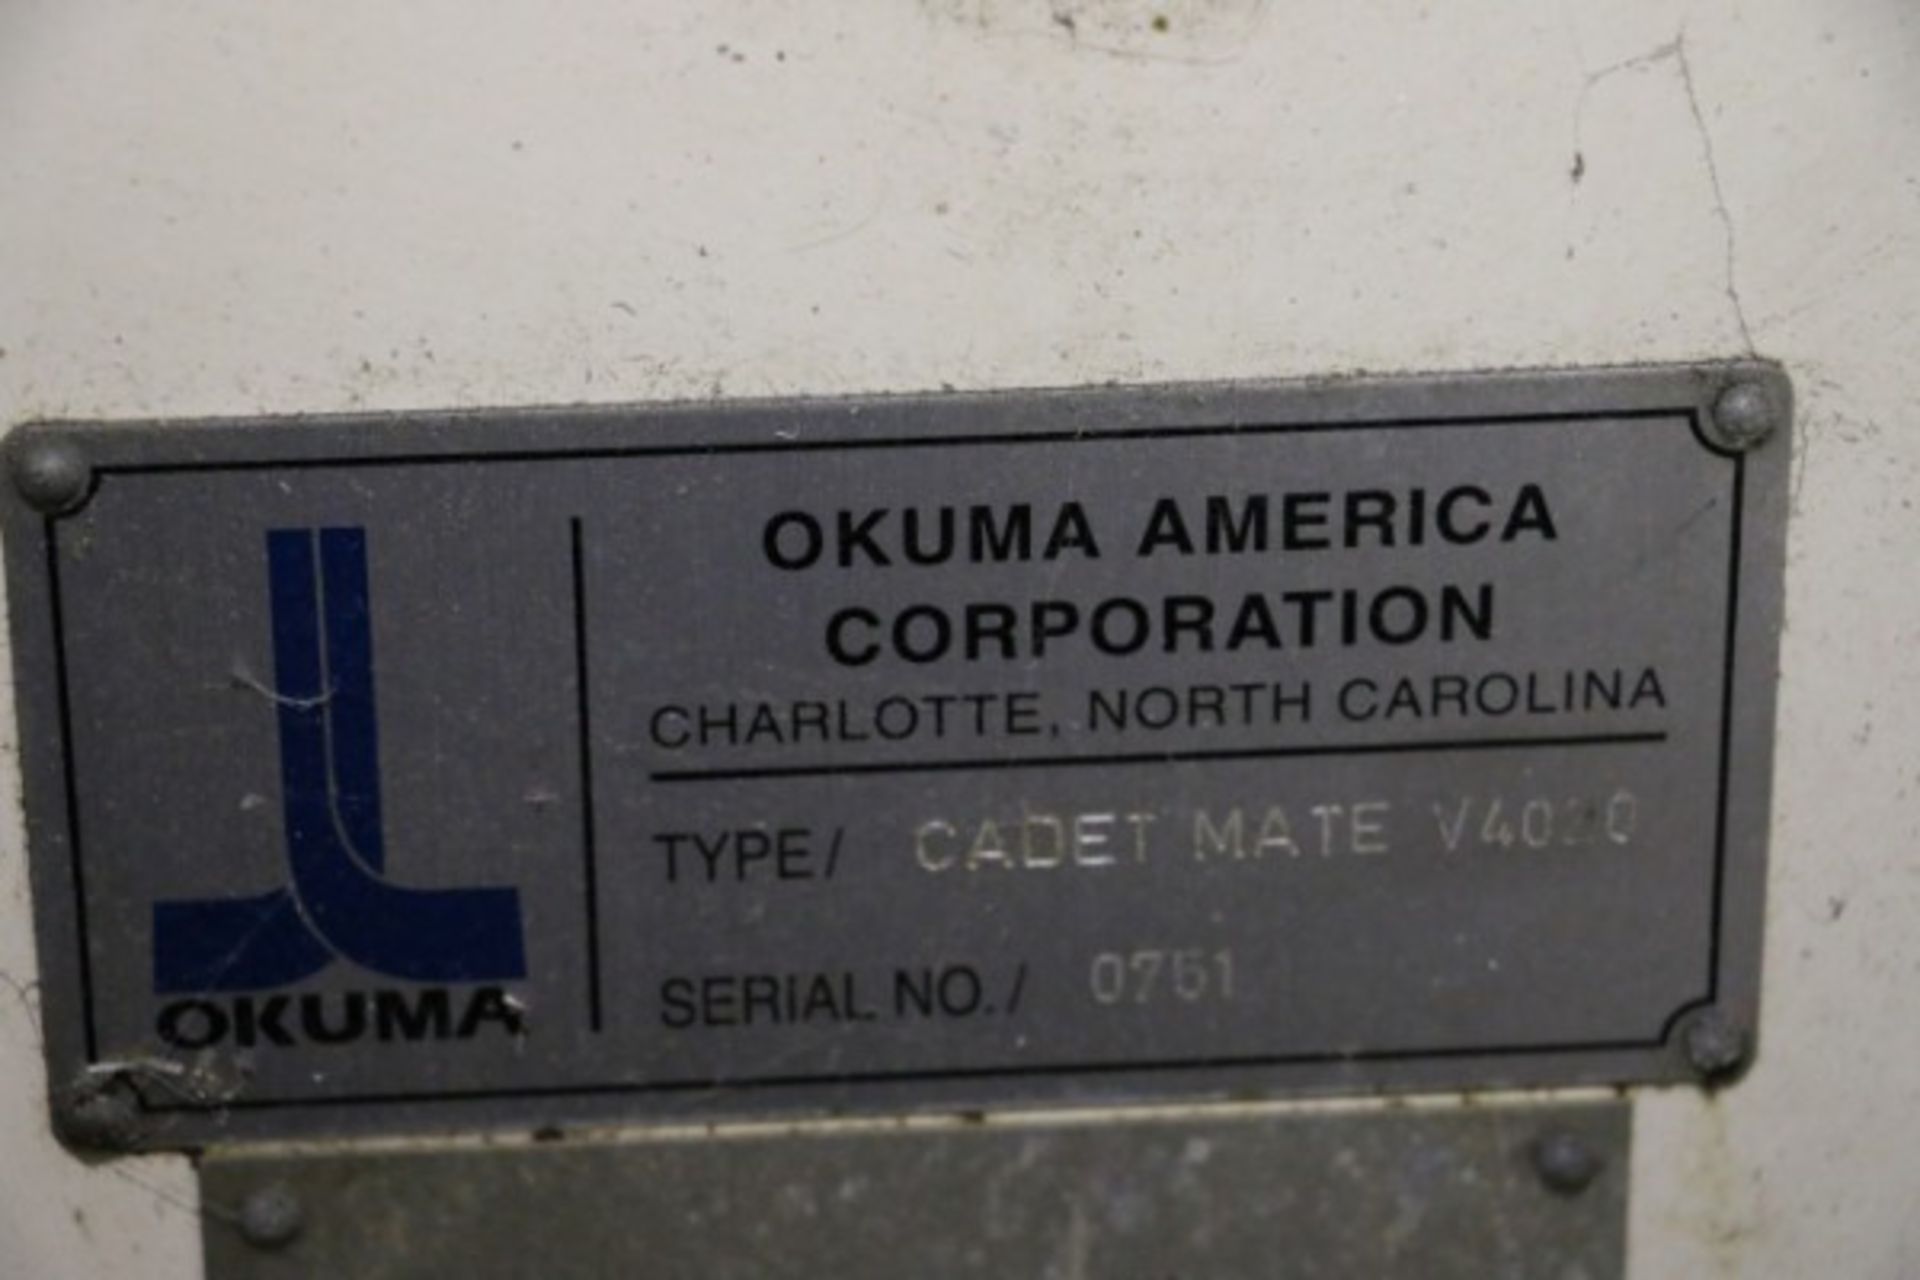 OKUMA MODEL CADET MATE V-4020, OKUMA OSP-700M CONTROL, S/N 0751, 8,569 Cutting Hours, New 1998 - Image 10 of 10